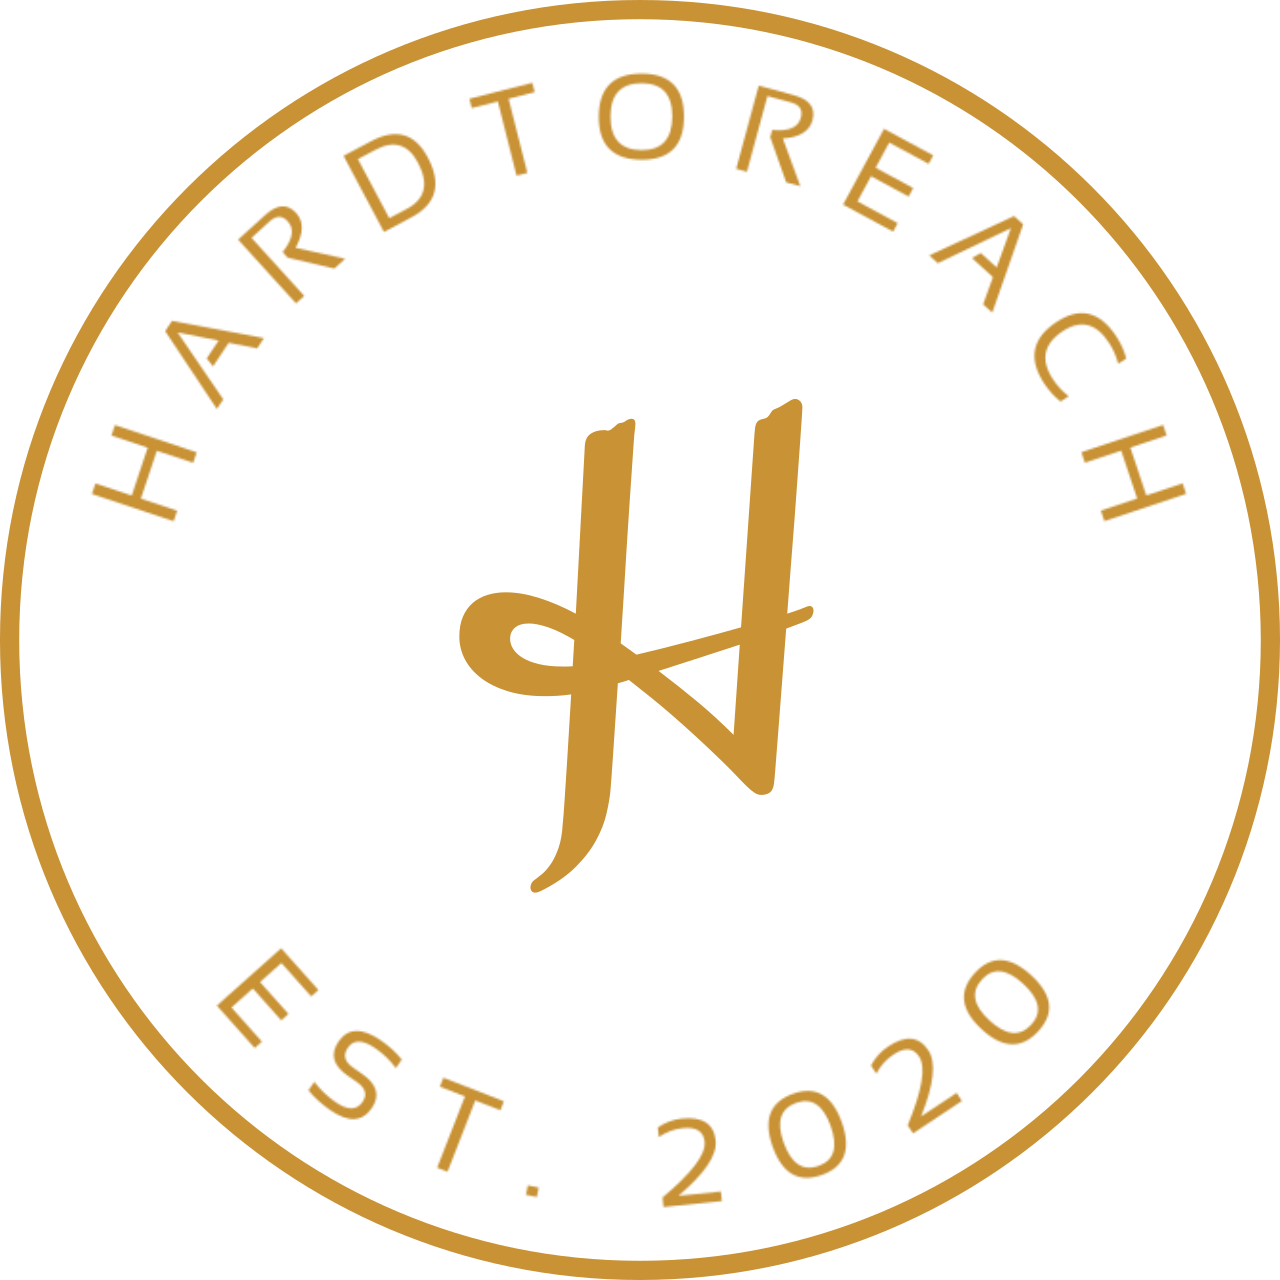 HardtoReach's logo